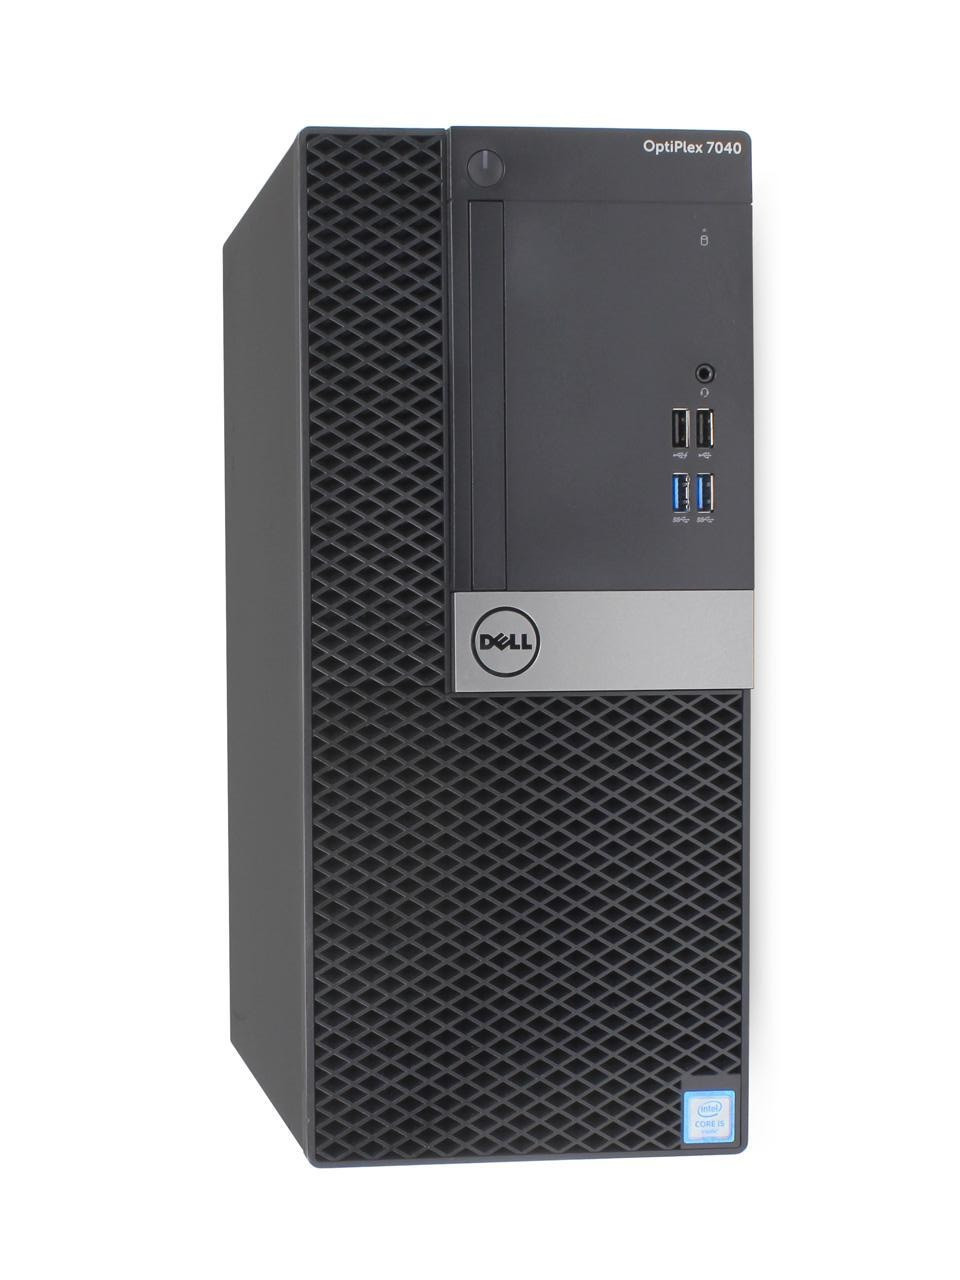 Dell Optiplex 7040 Desktop Intel Core i7 3.40 GHz 16GB 500 GB Windows 10 Pro | Refurbished